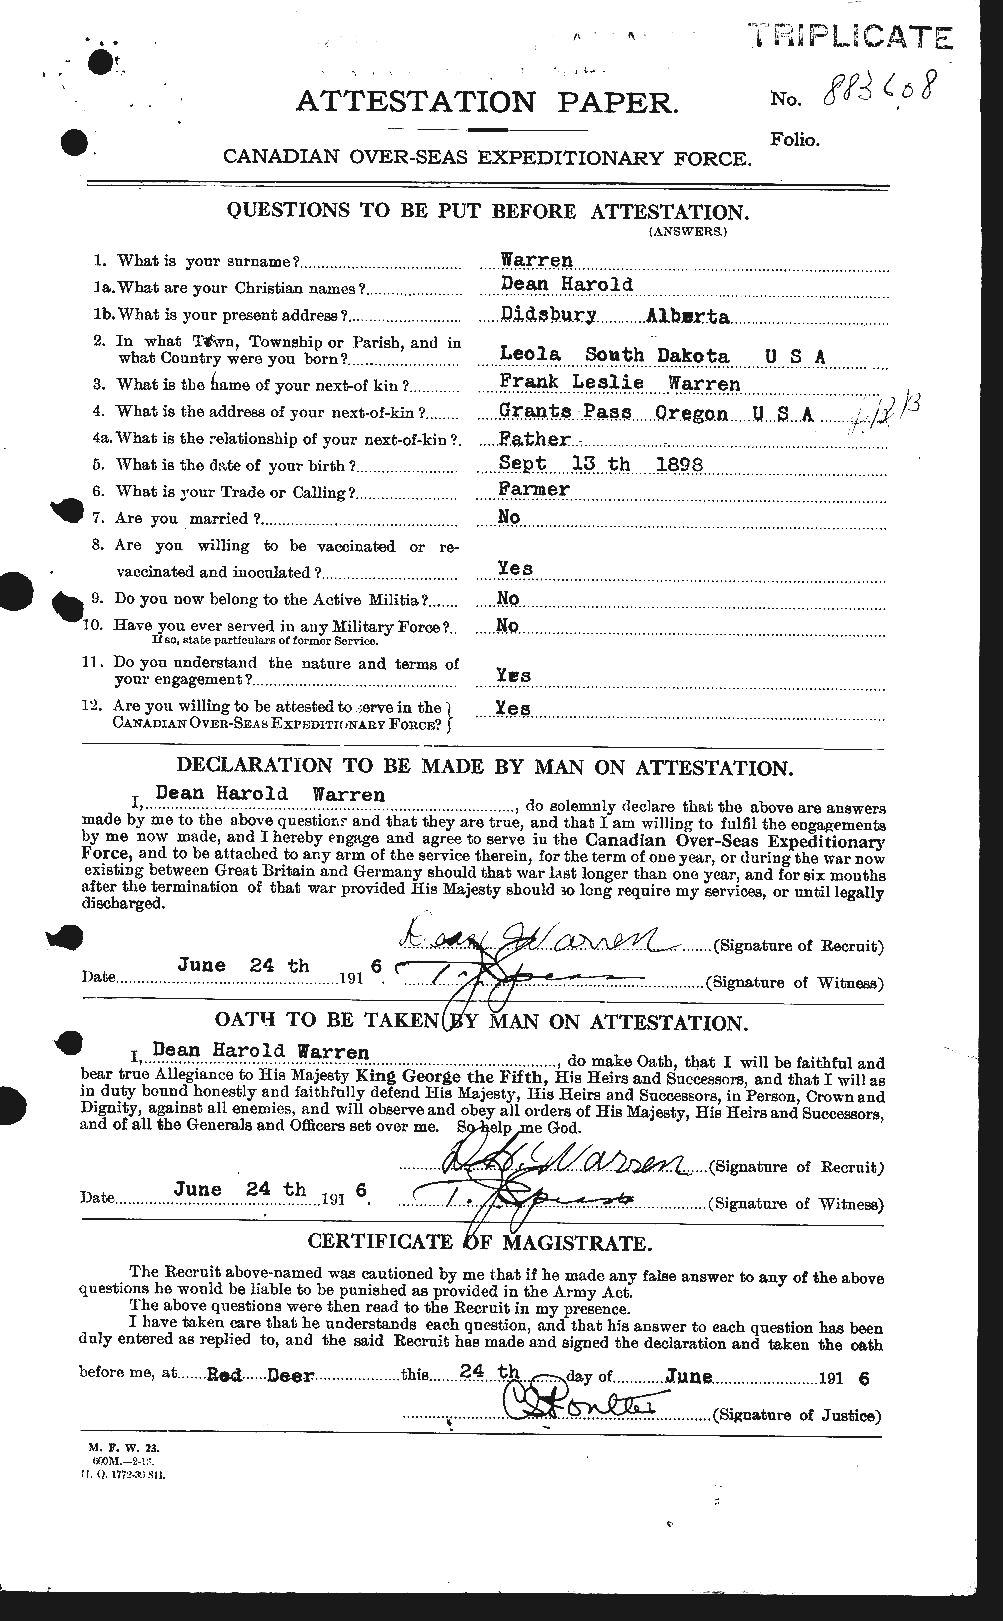 Dossiers du Personnel de la Première Guerre mondiale - CEC 658404a